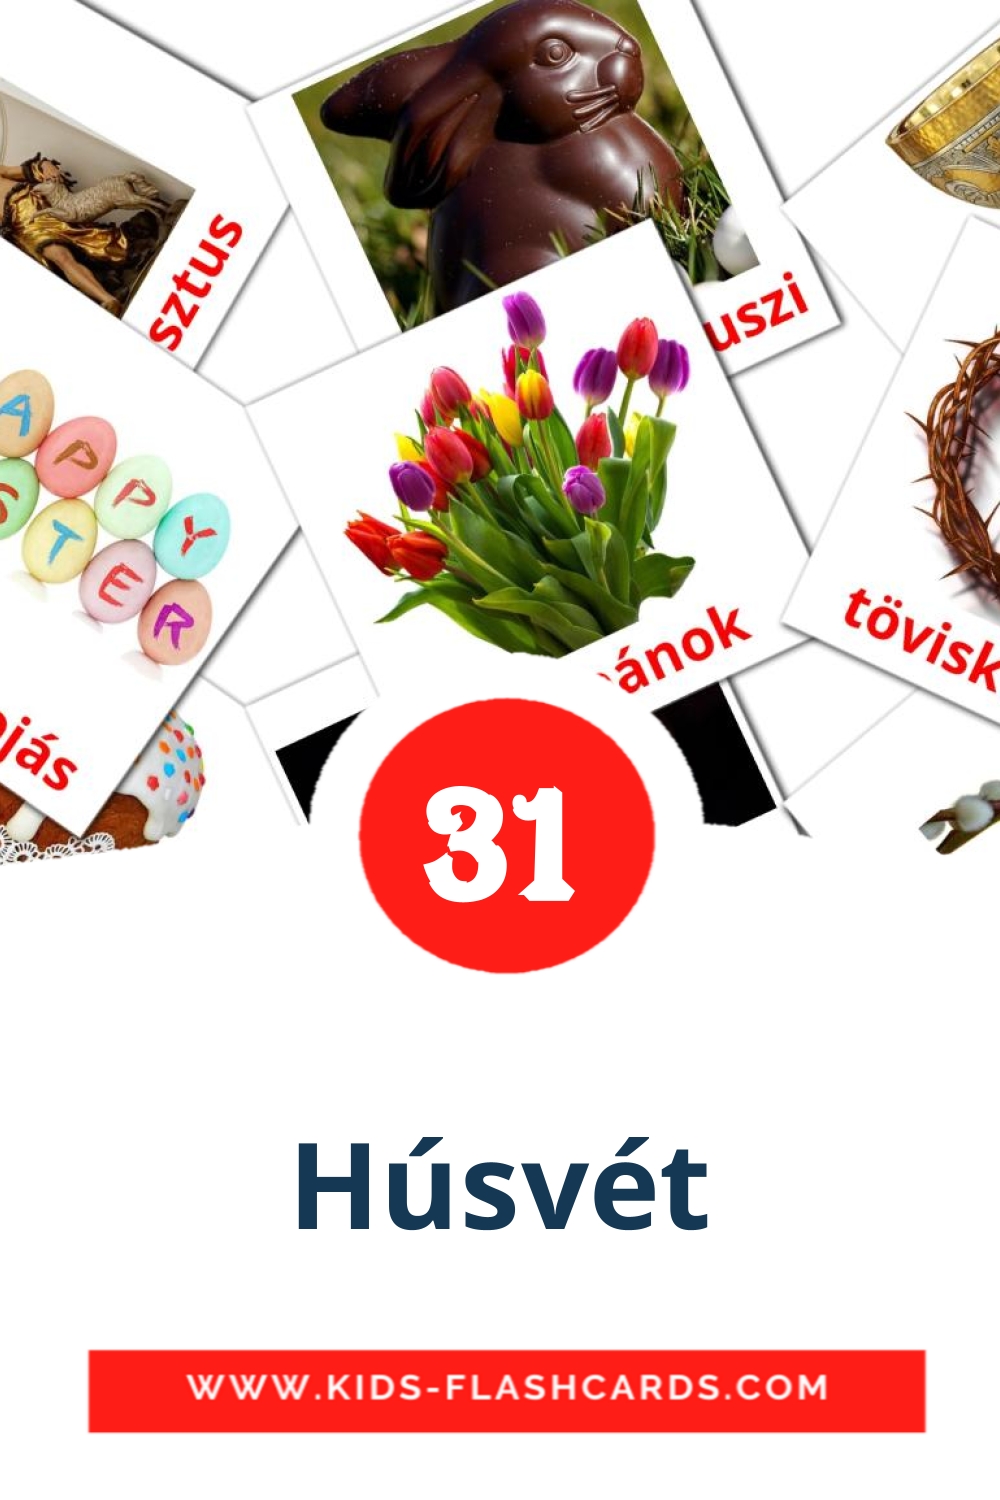 31 tarjetas didacticas de Húsvét para el jardín de infancia en húngaro